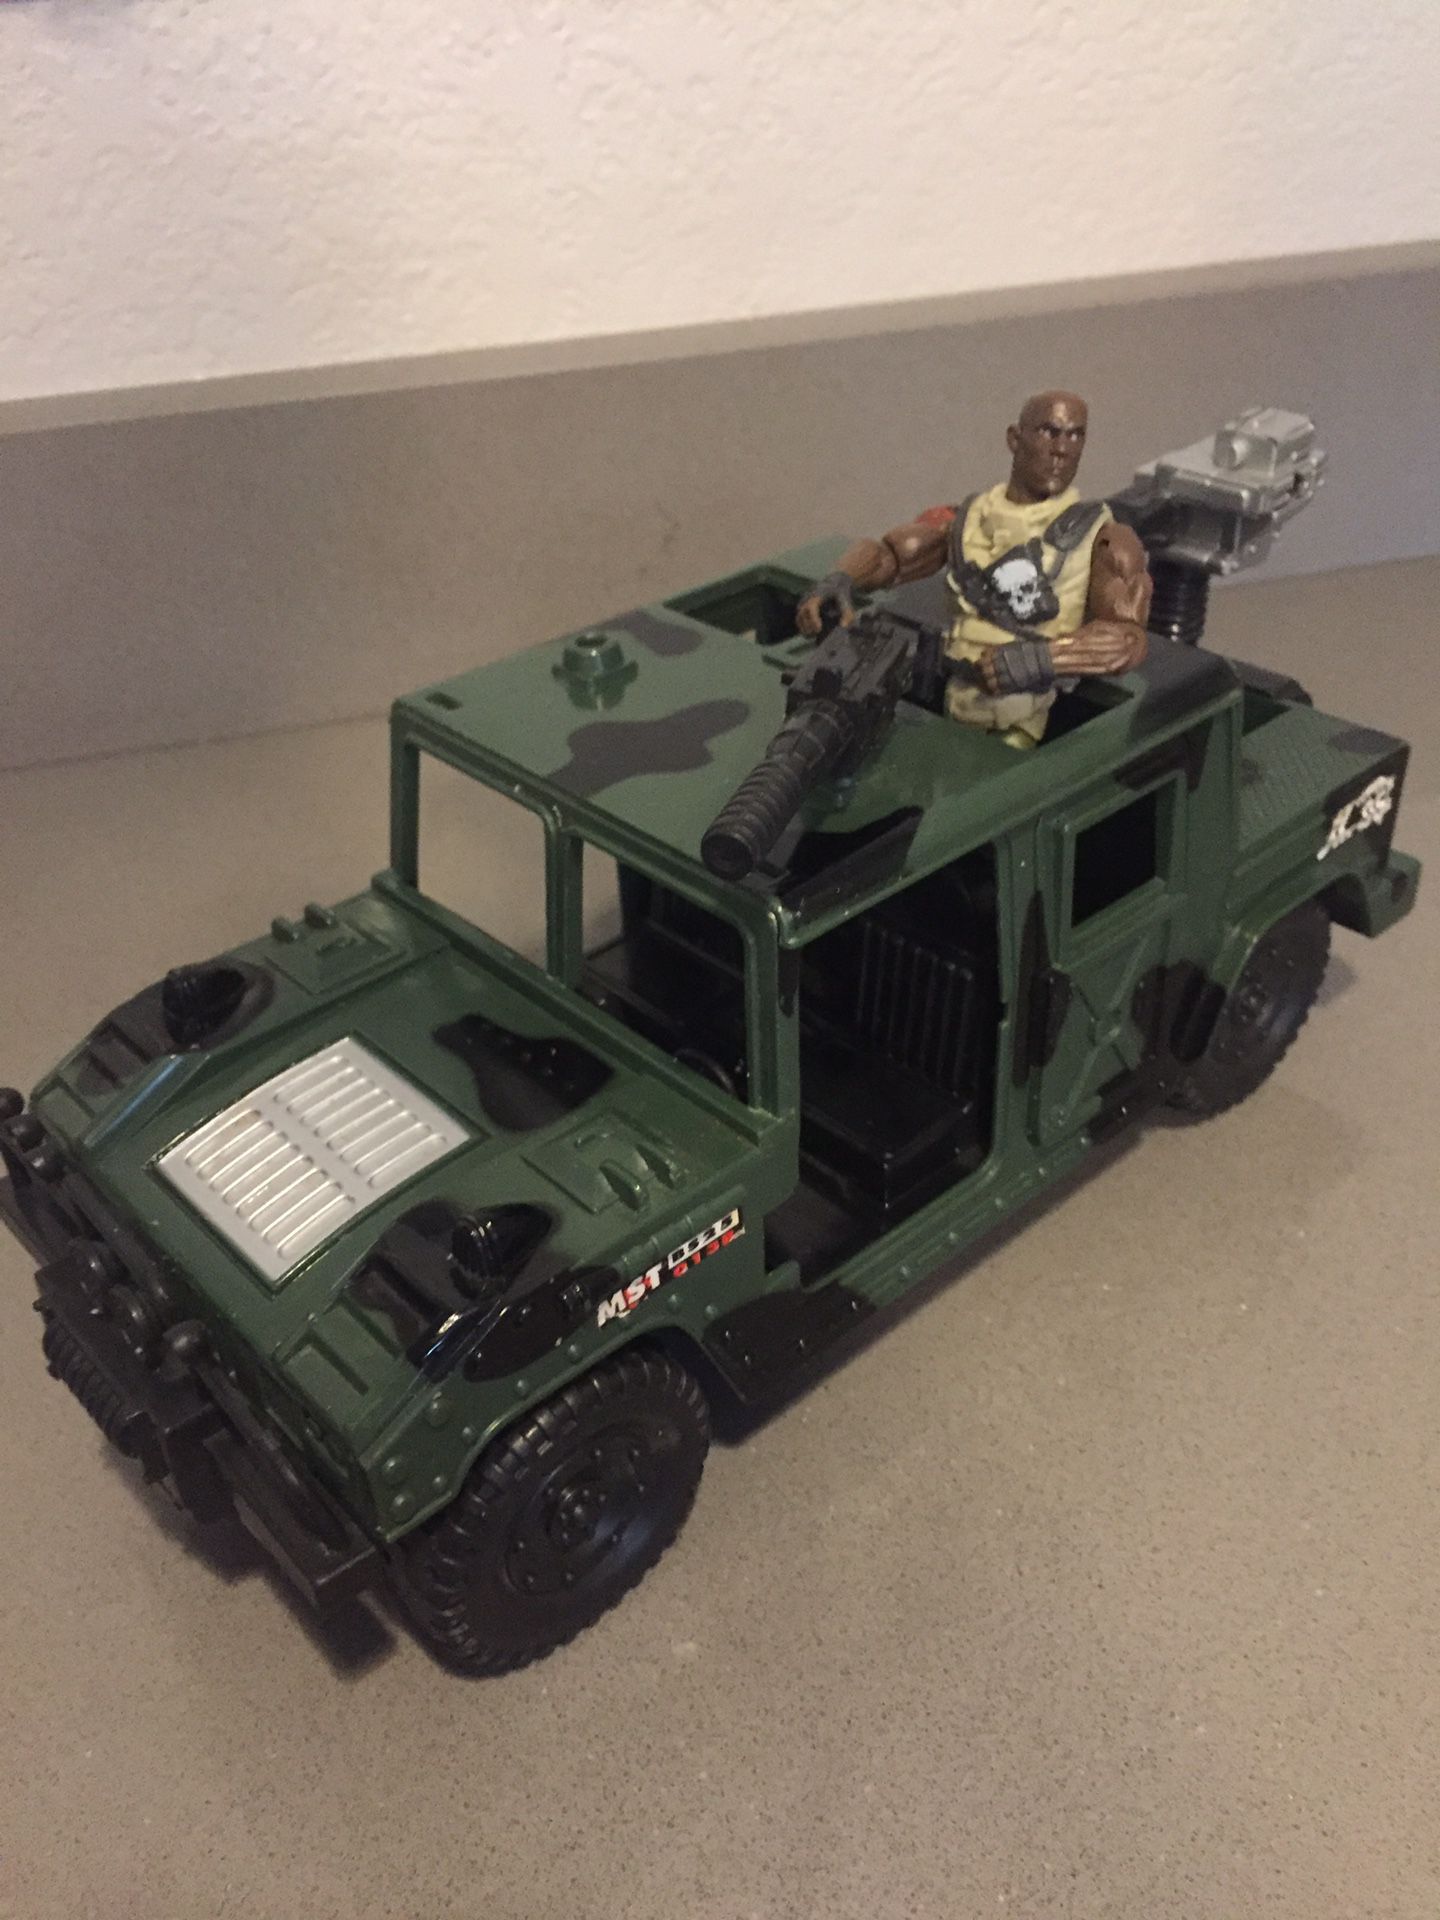 G.I. Joe with jeep